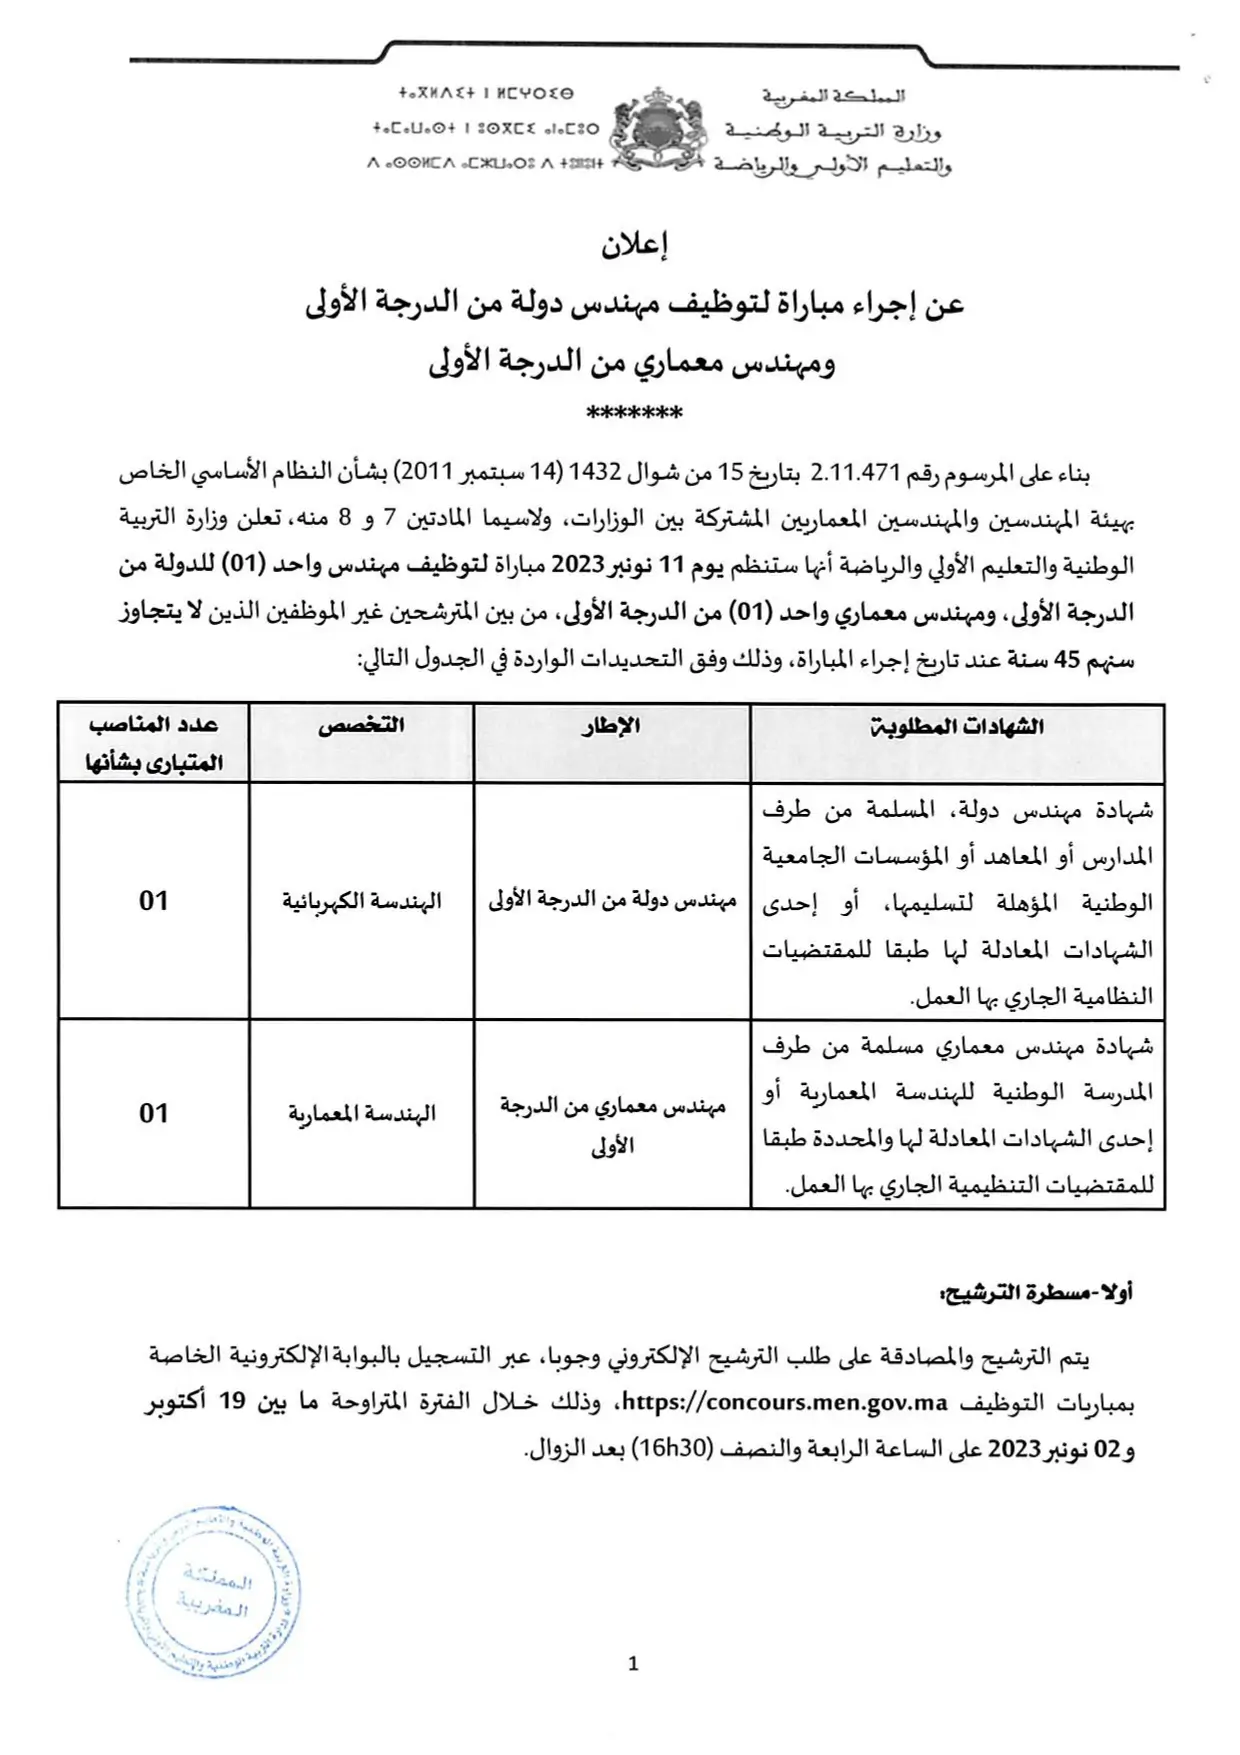 Concours Ministère de l'Education 2023 (36 postes)